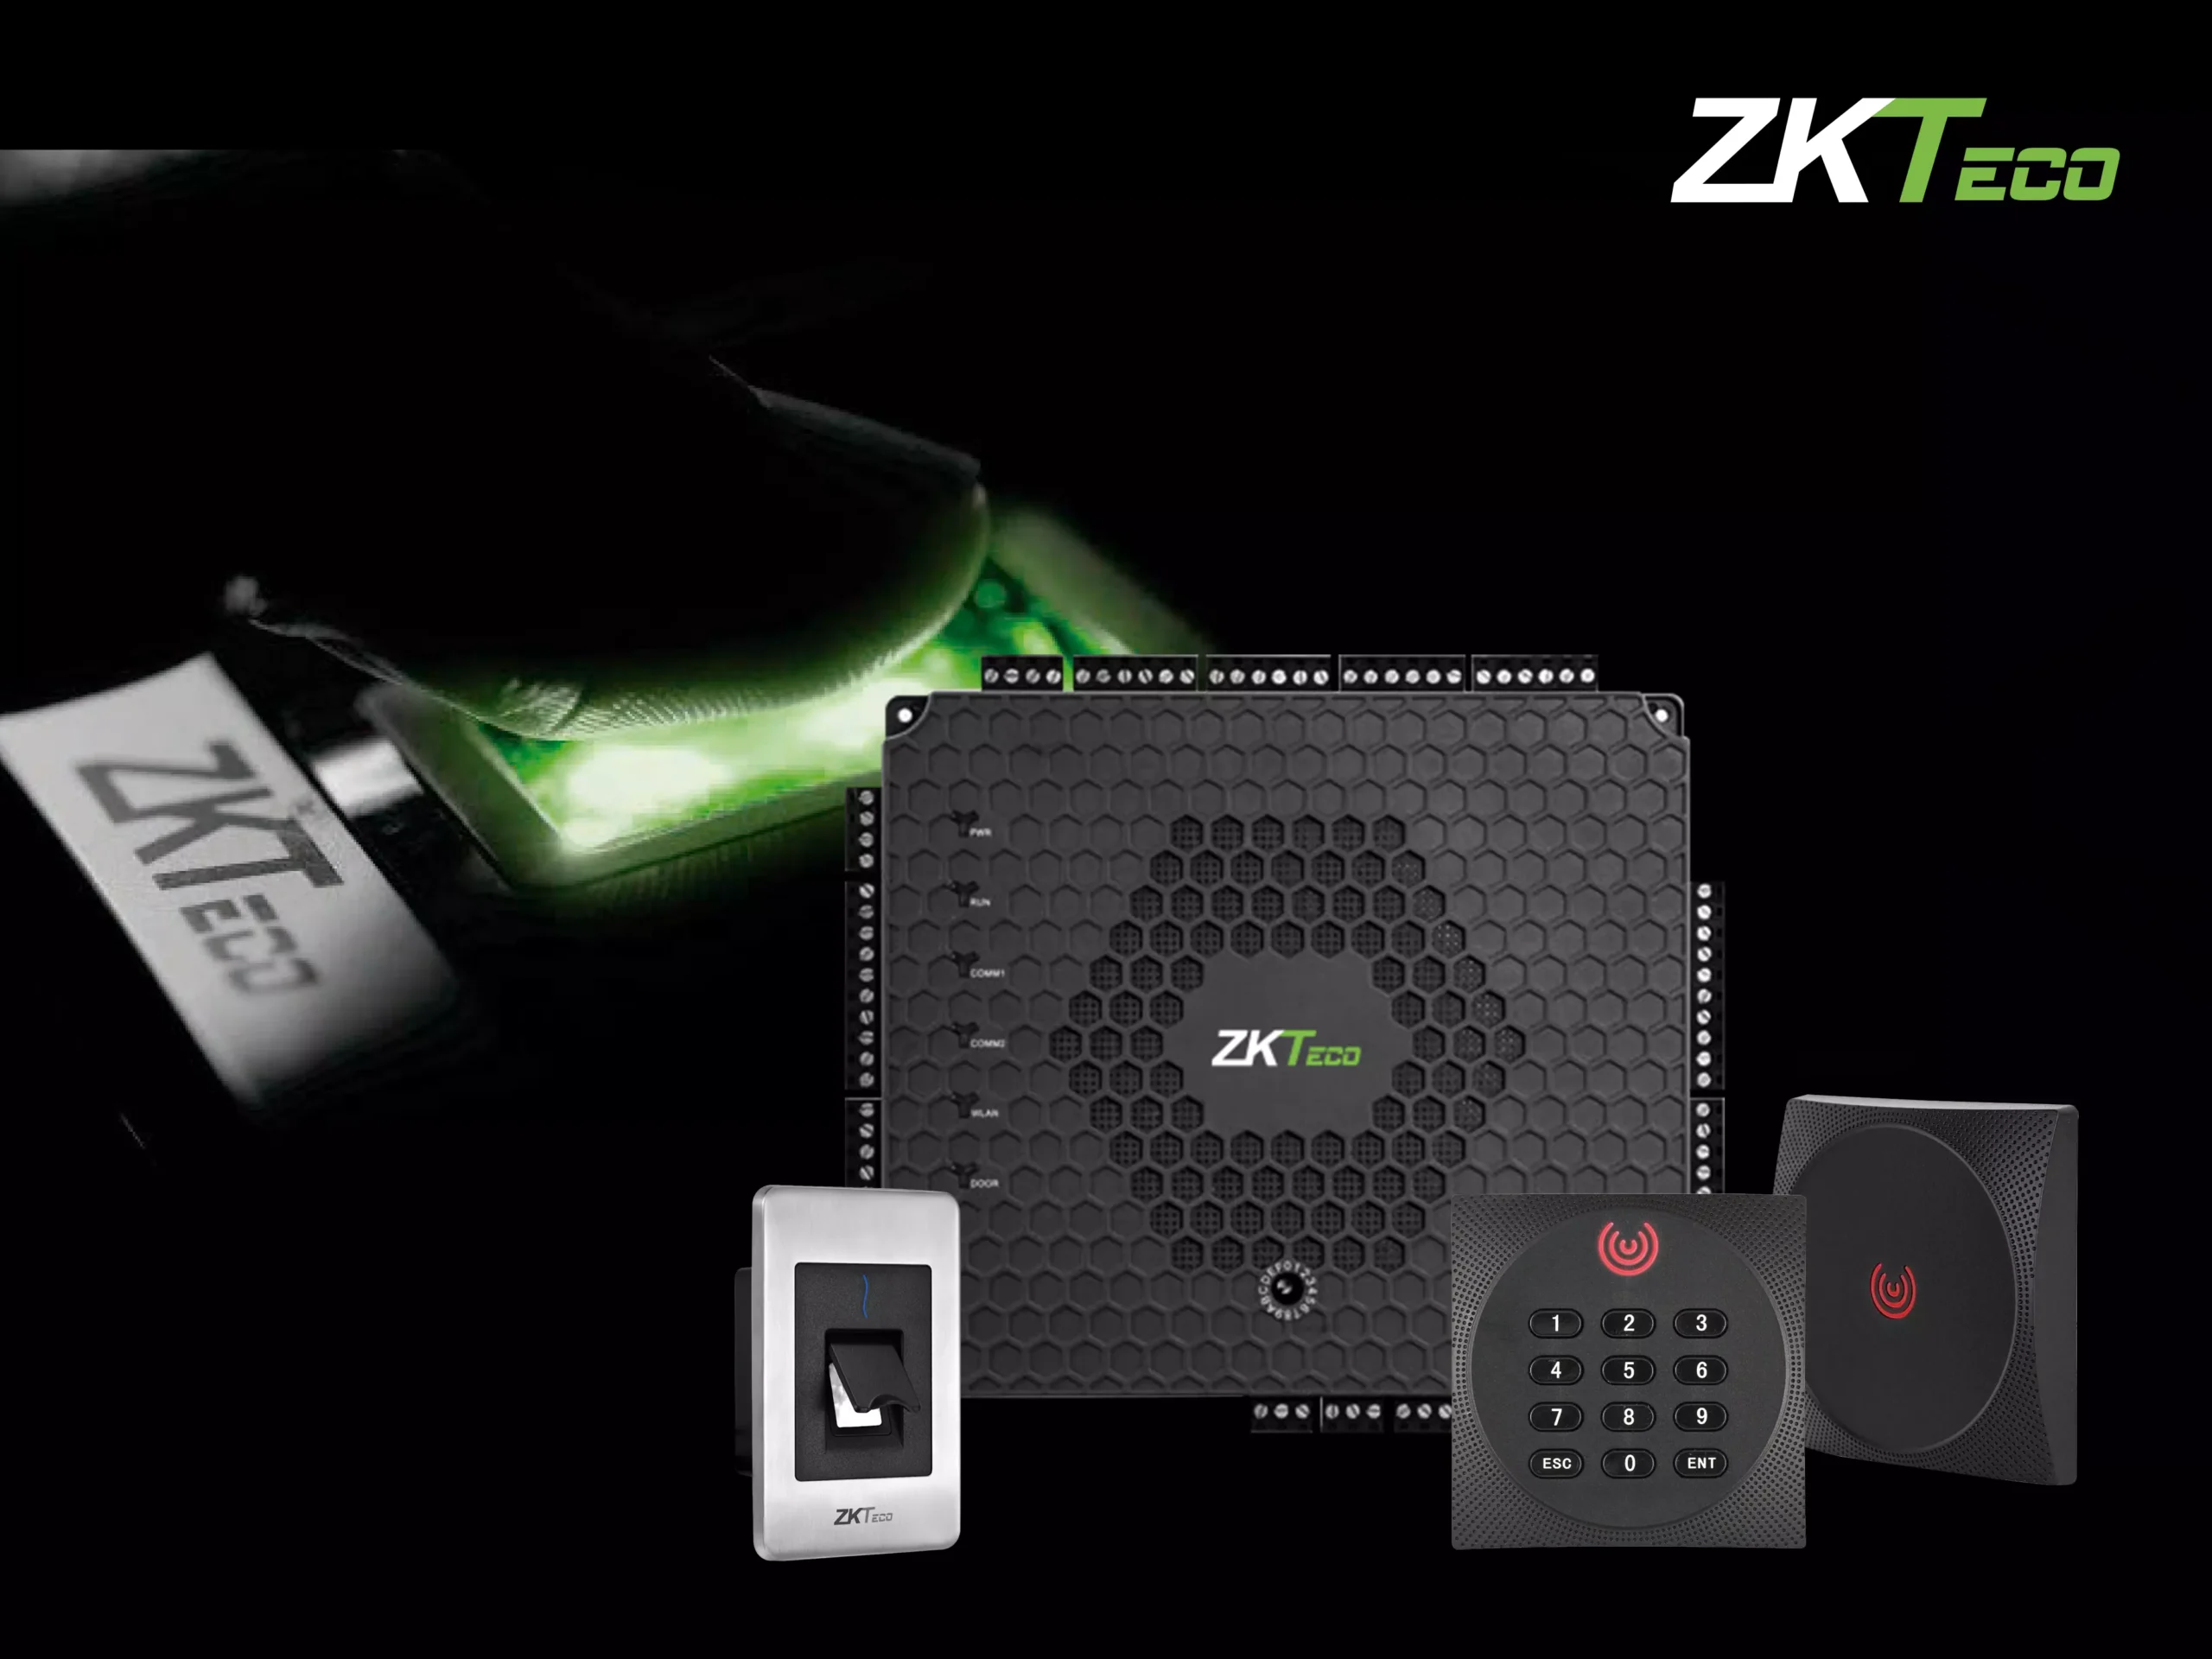 Zutrittskontrolle mit ZKTeco - beispielsweise mit Fingerprint, RFID oder Pin-Code